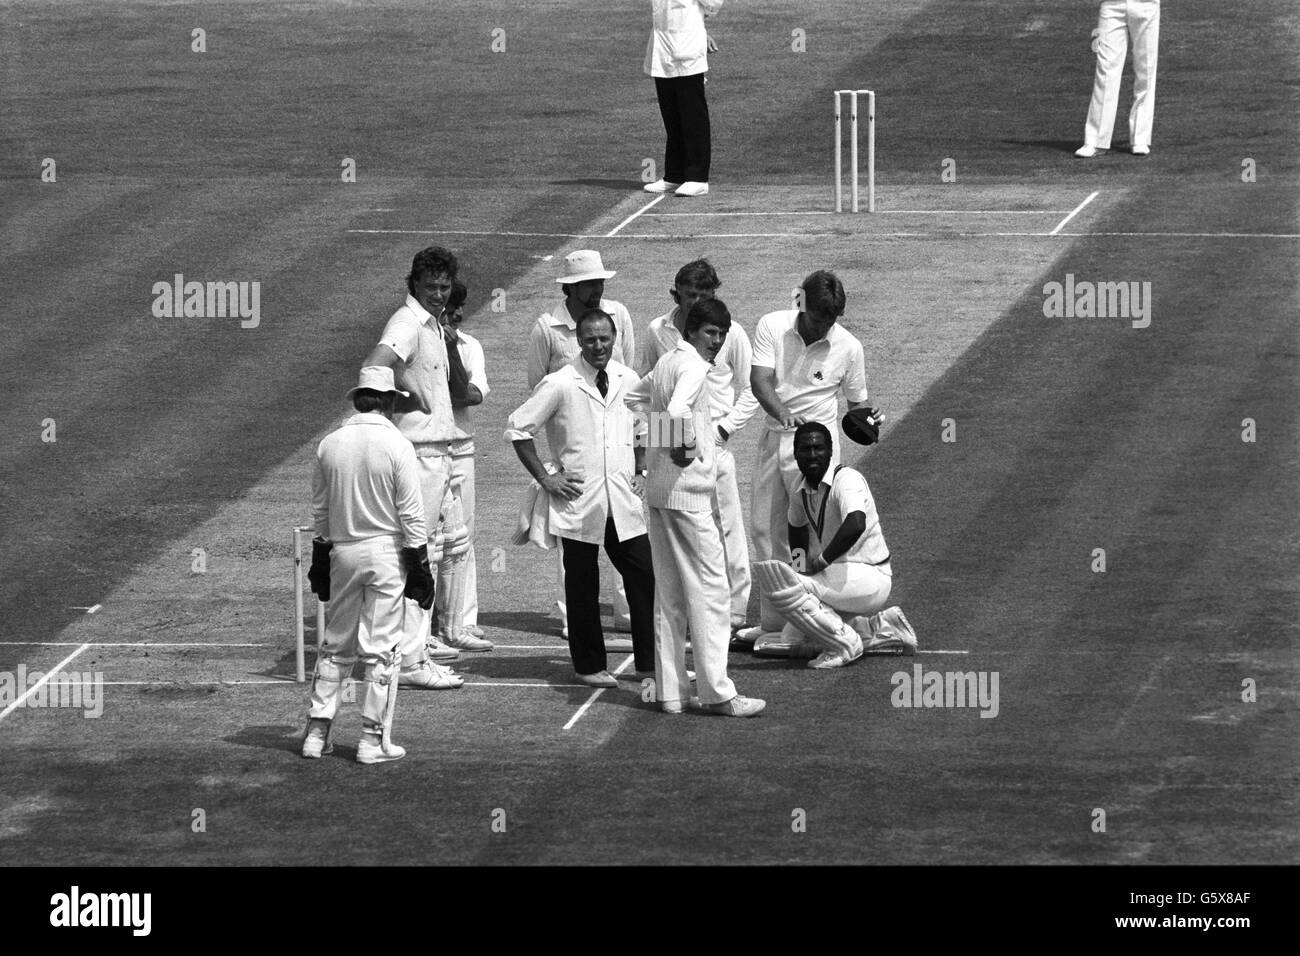 Le batteur des West Indies Viv Richards (à droite) reçoit un pat sur la tête de Ian Botham, le All-Rounder anglais, pendant la deuxième journée du First Test Match à Edgbaston à Birmingham. Banque D'Images